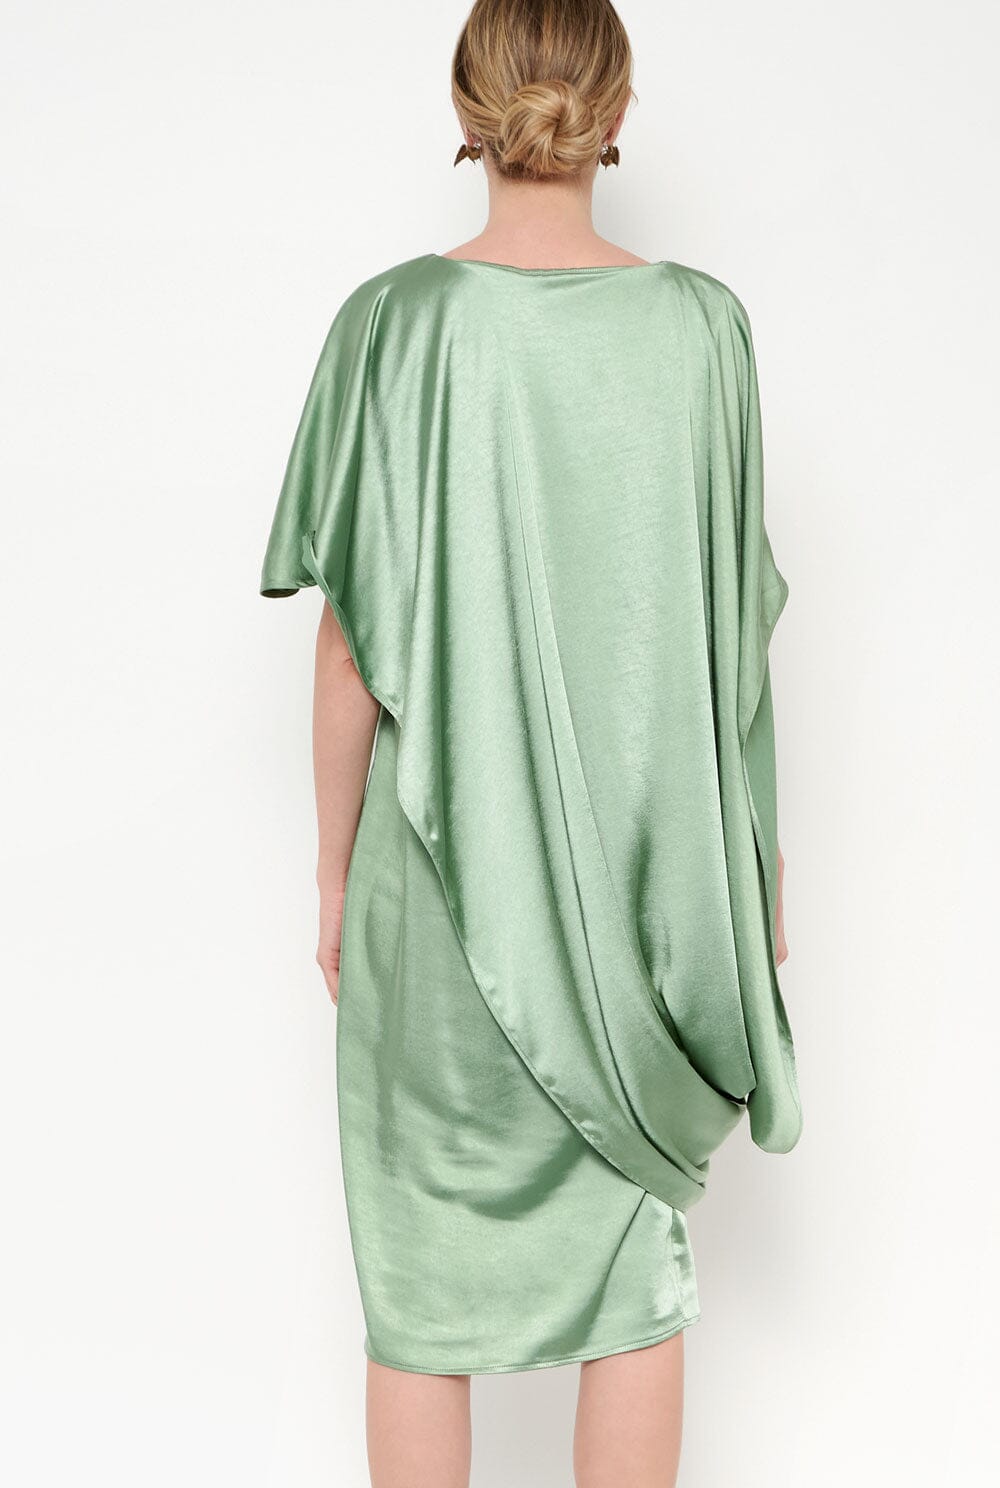 Marlene Dress Verde Dresses Duyos 